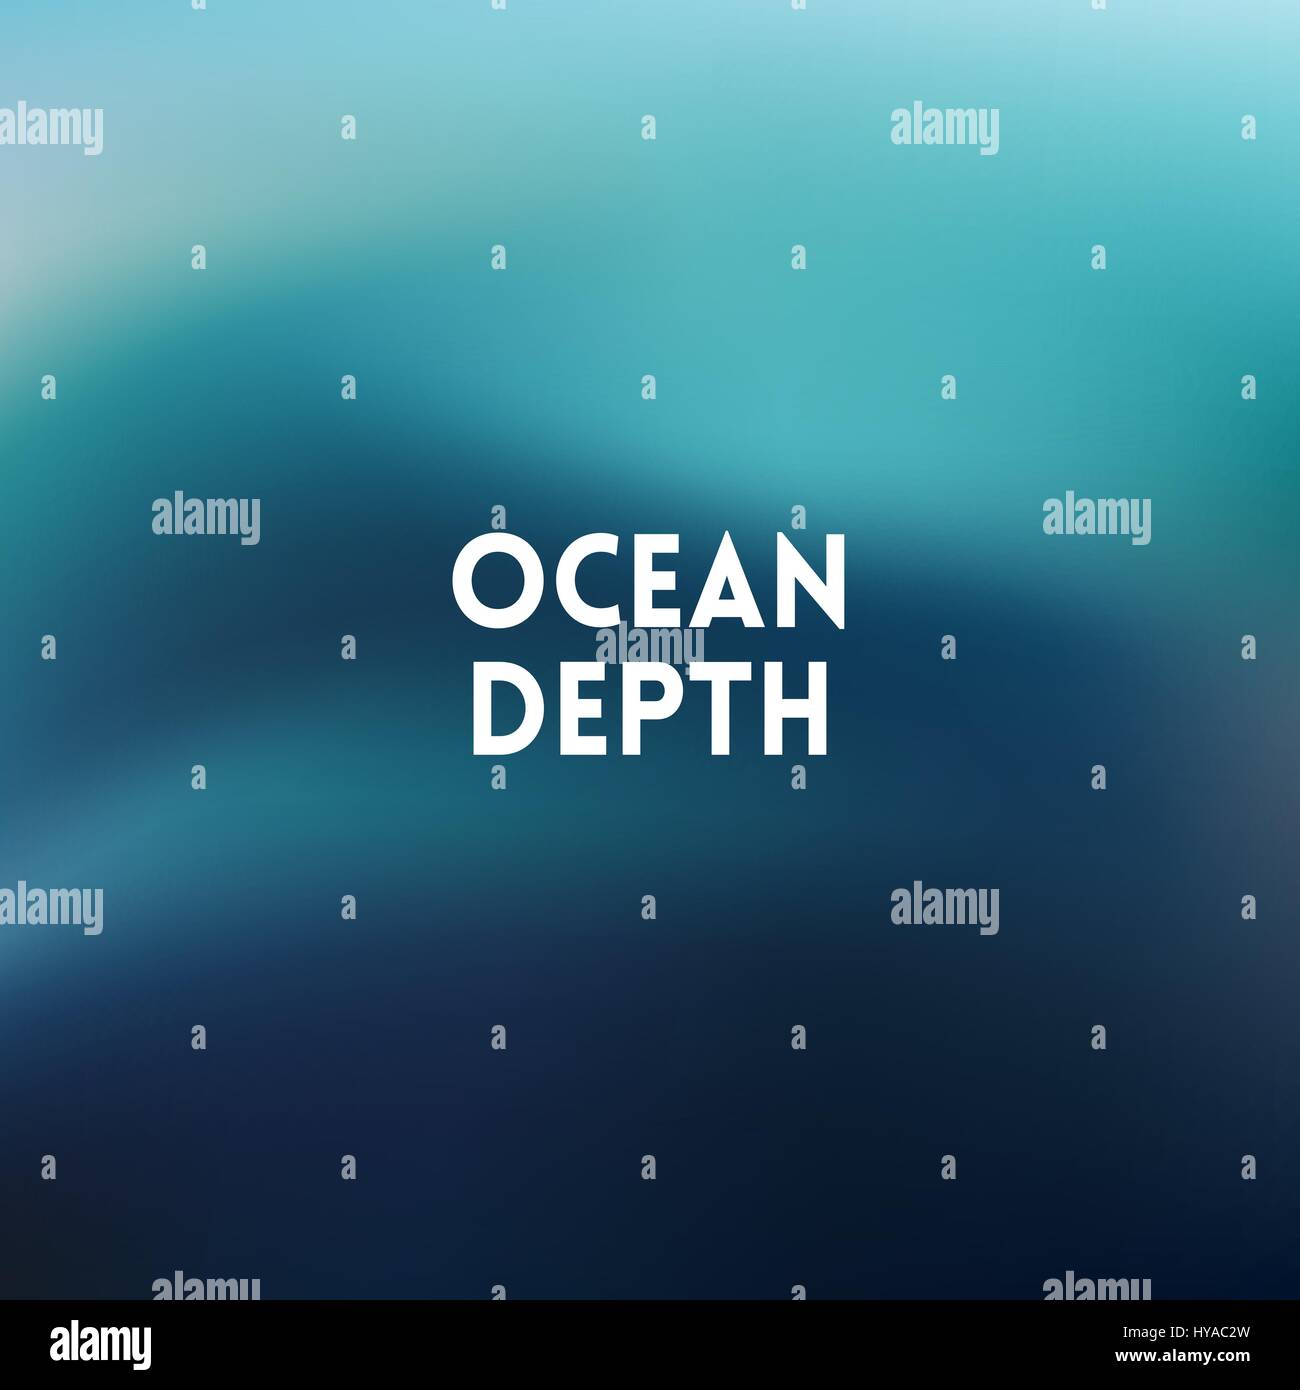 quadratische unscharfen Hintergrund - Himmel Wasserfarben des Meeres mit Zitat Stock Vektor